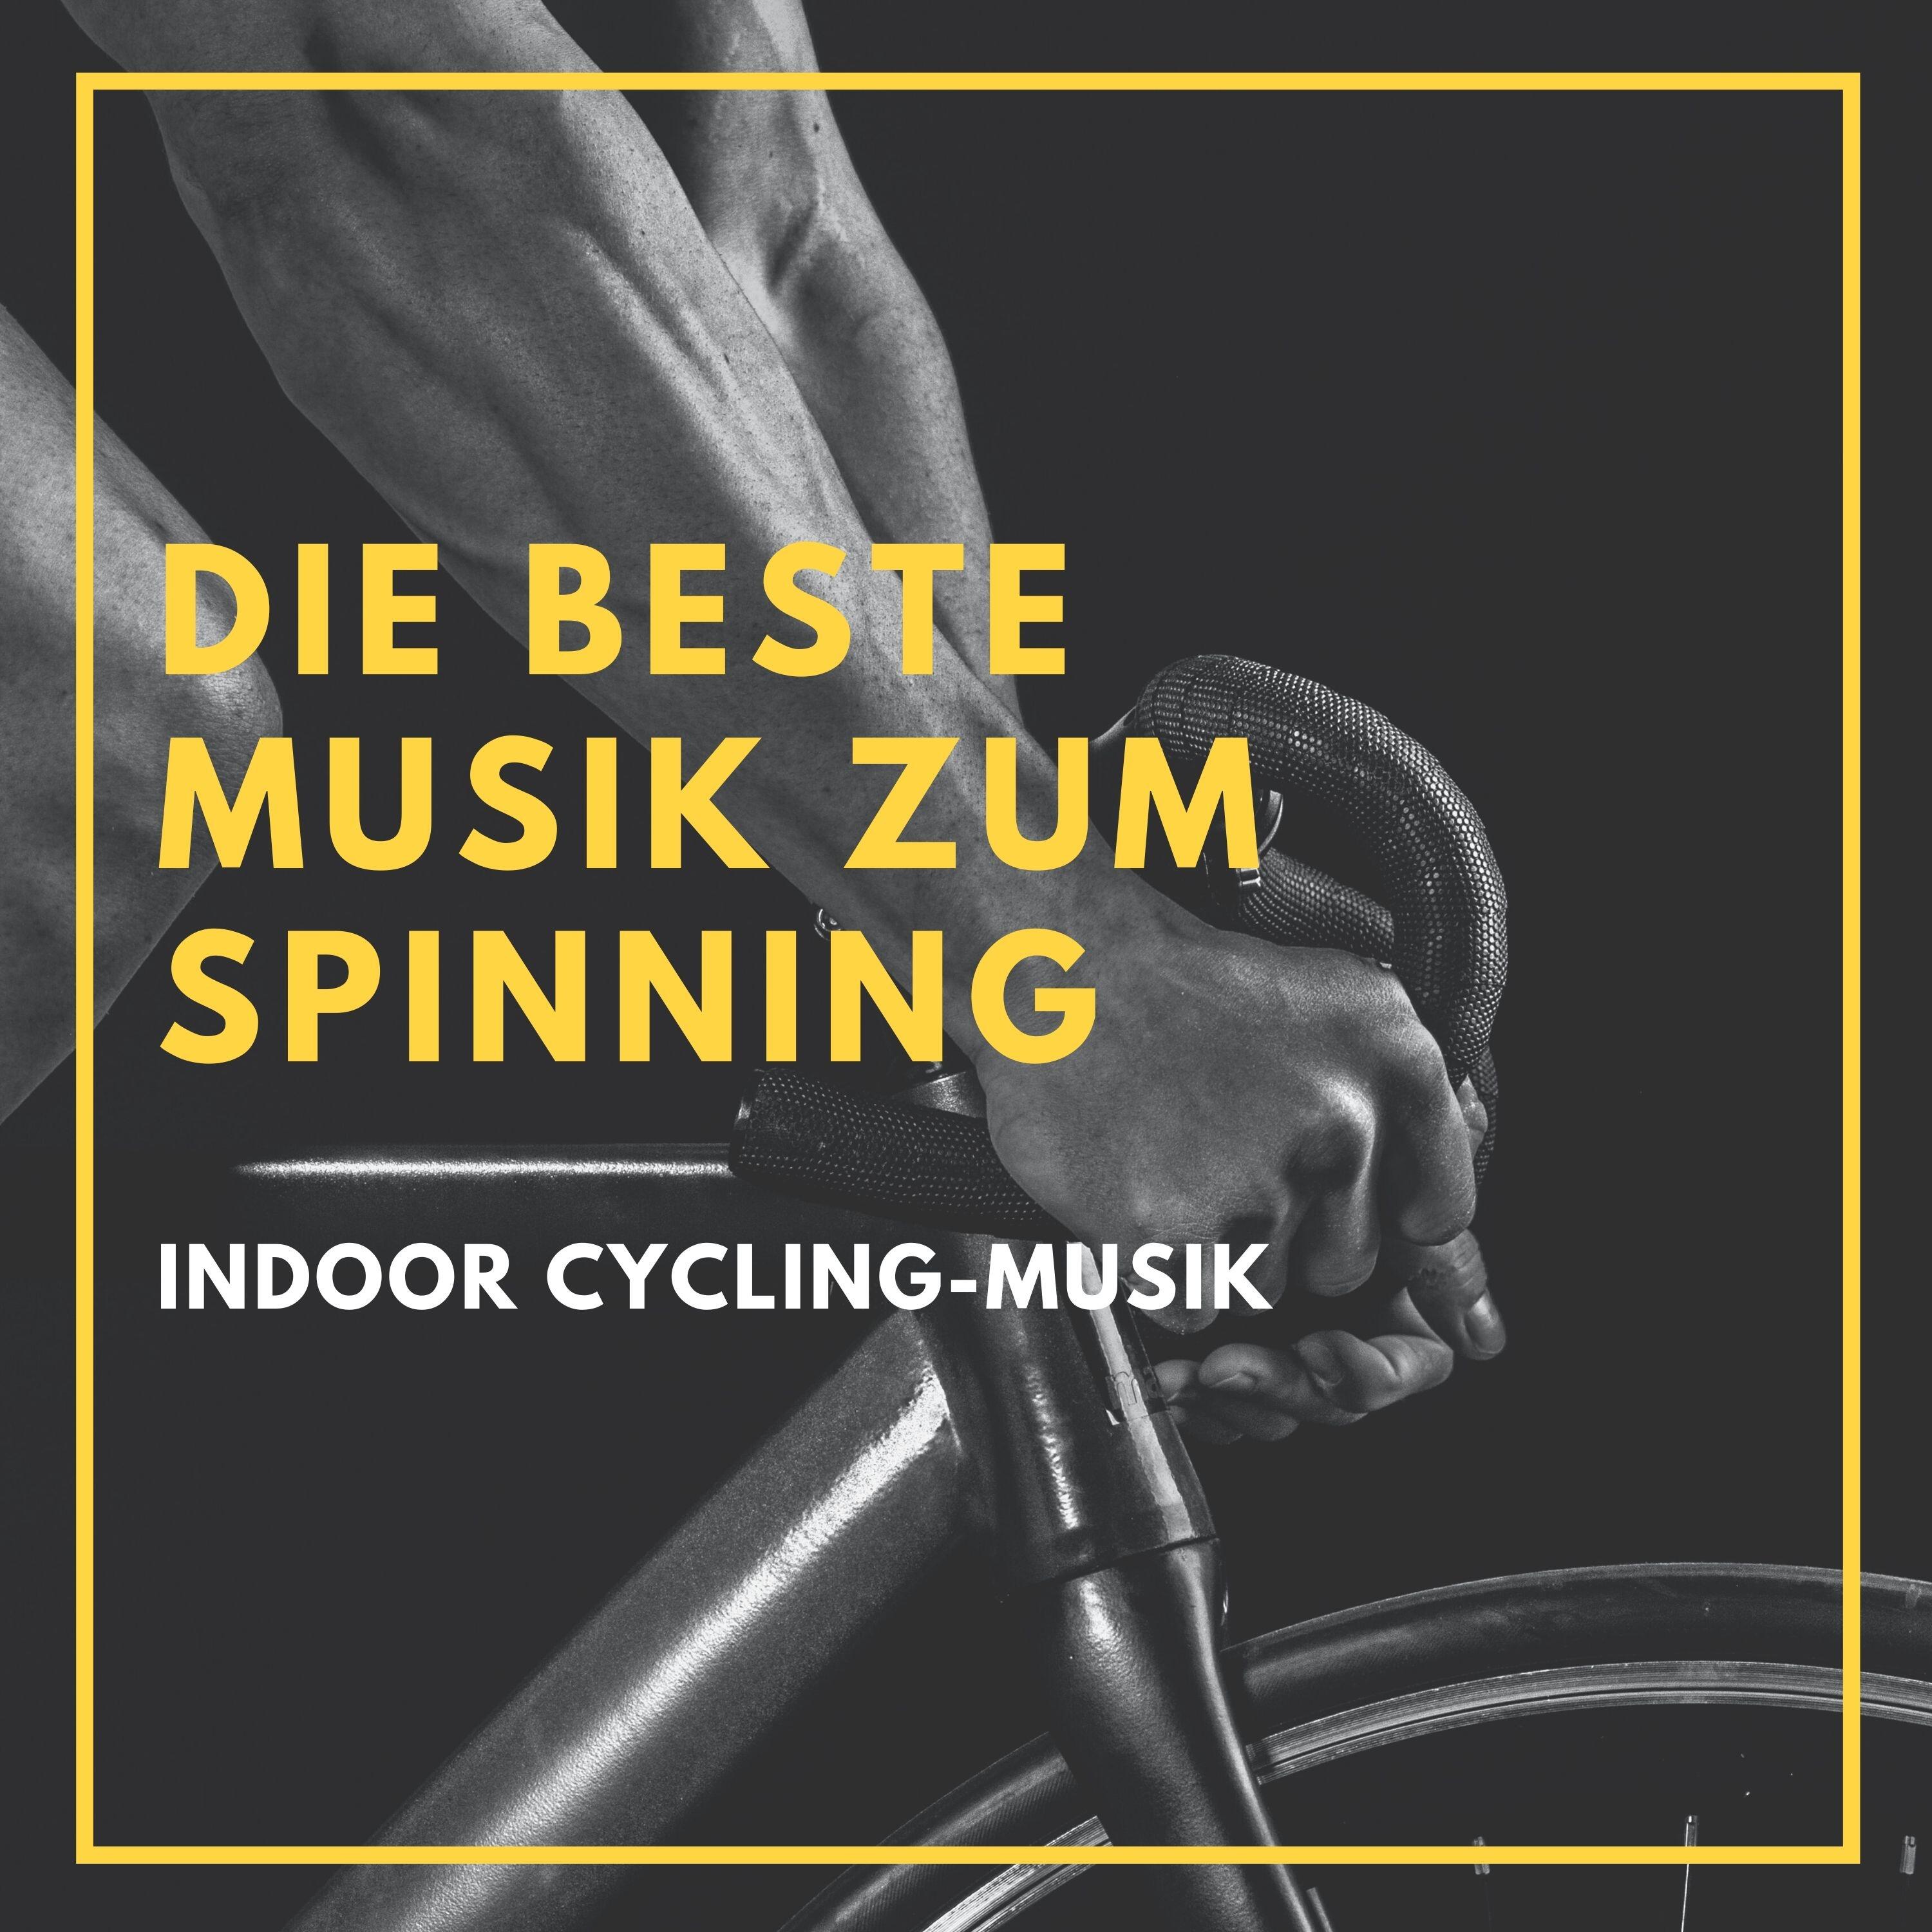 Spinning Workout Die beste Musik zum Spinning Indoor CyclingMusik